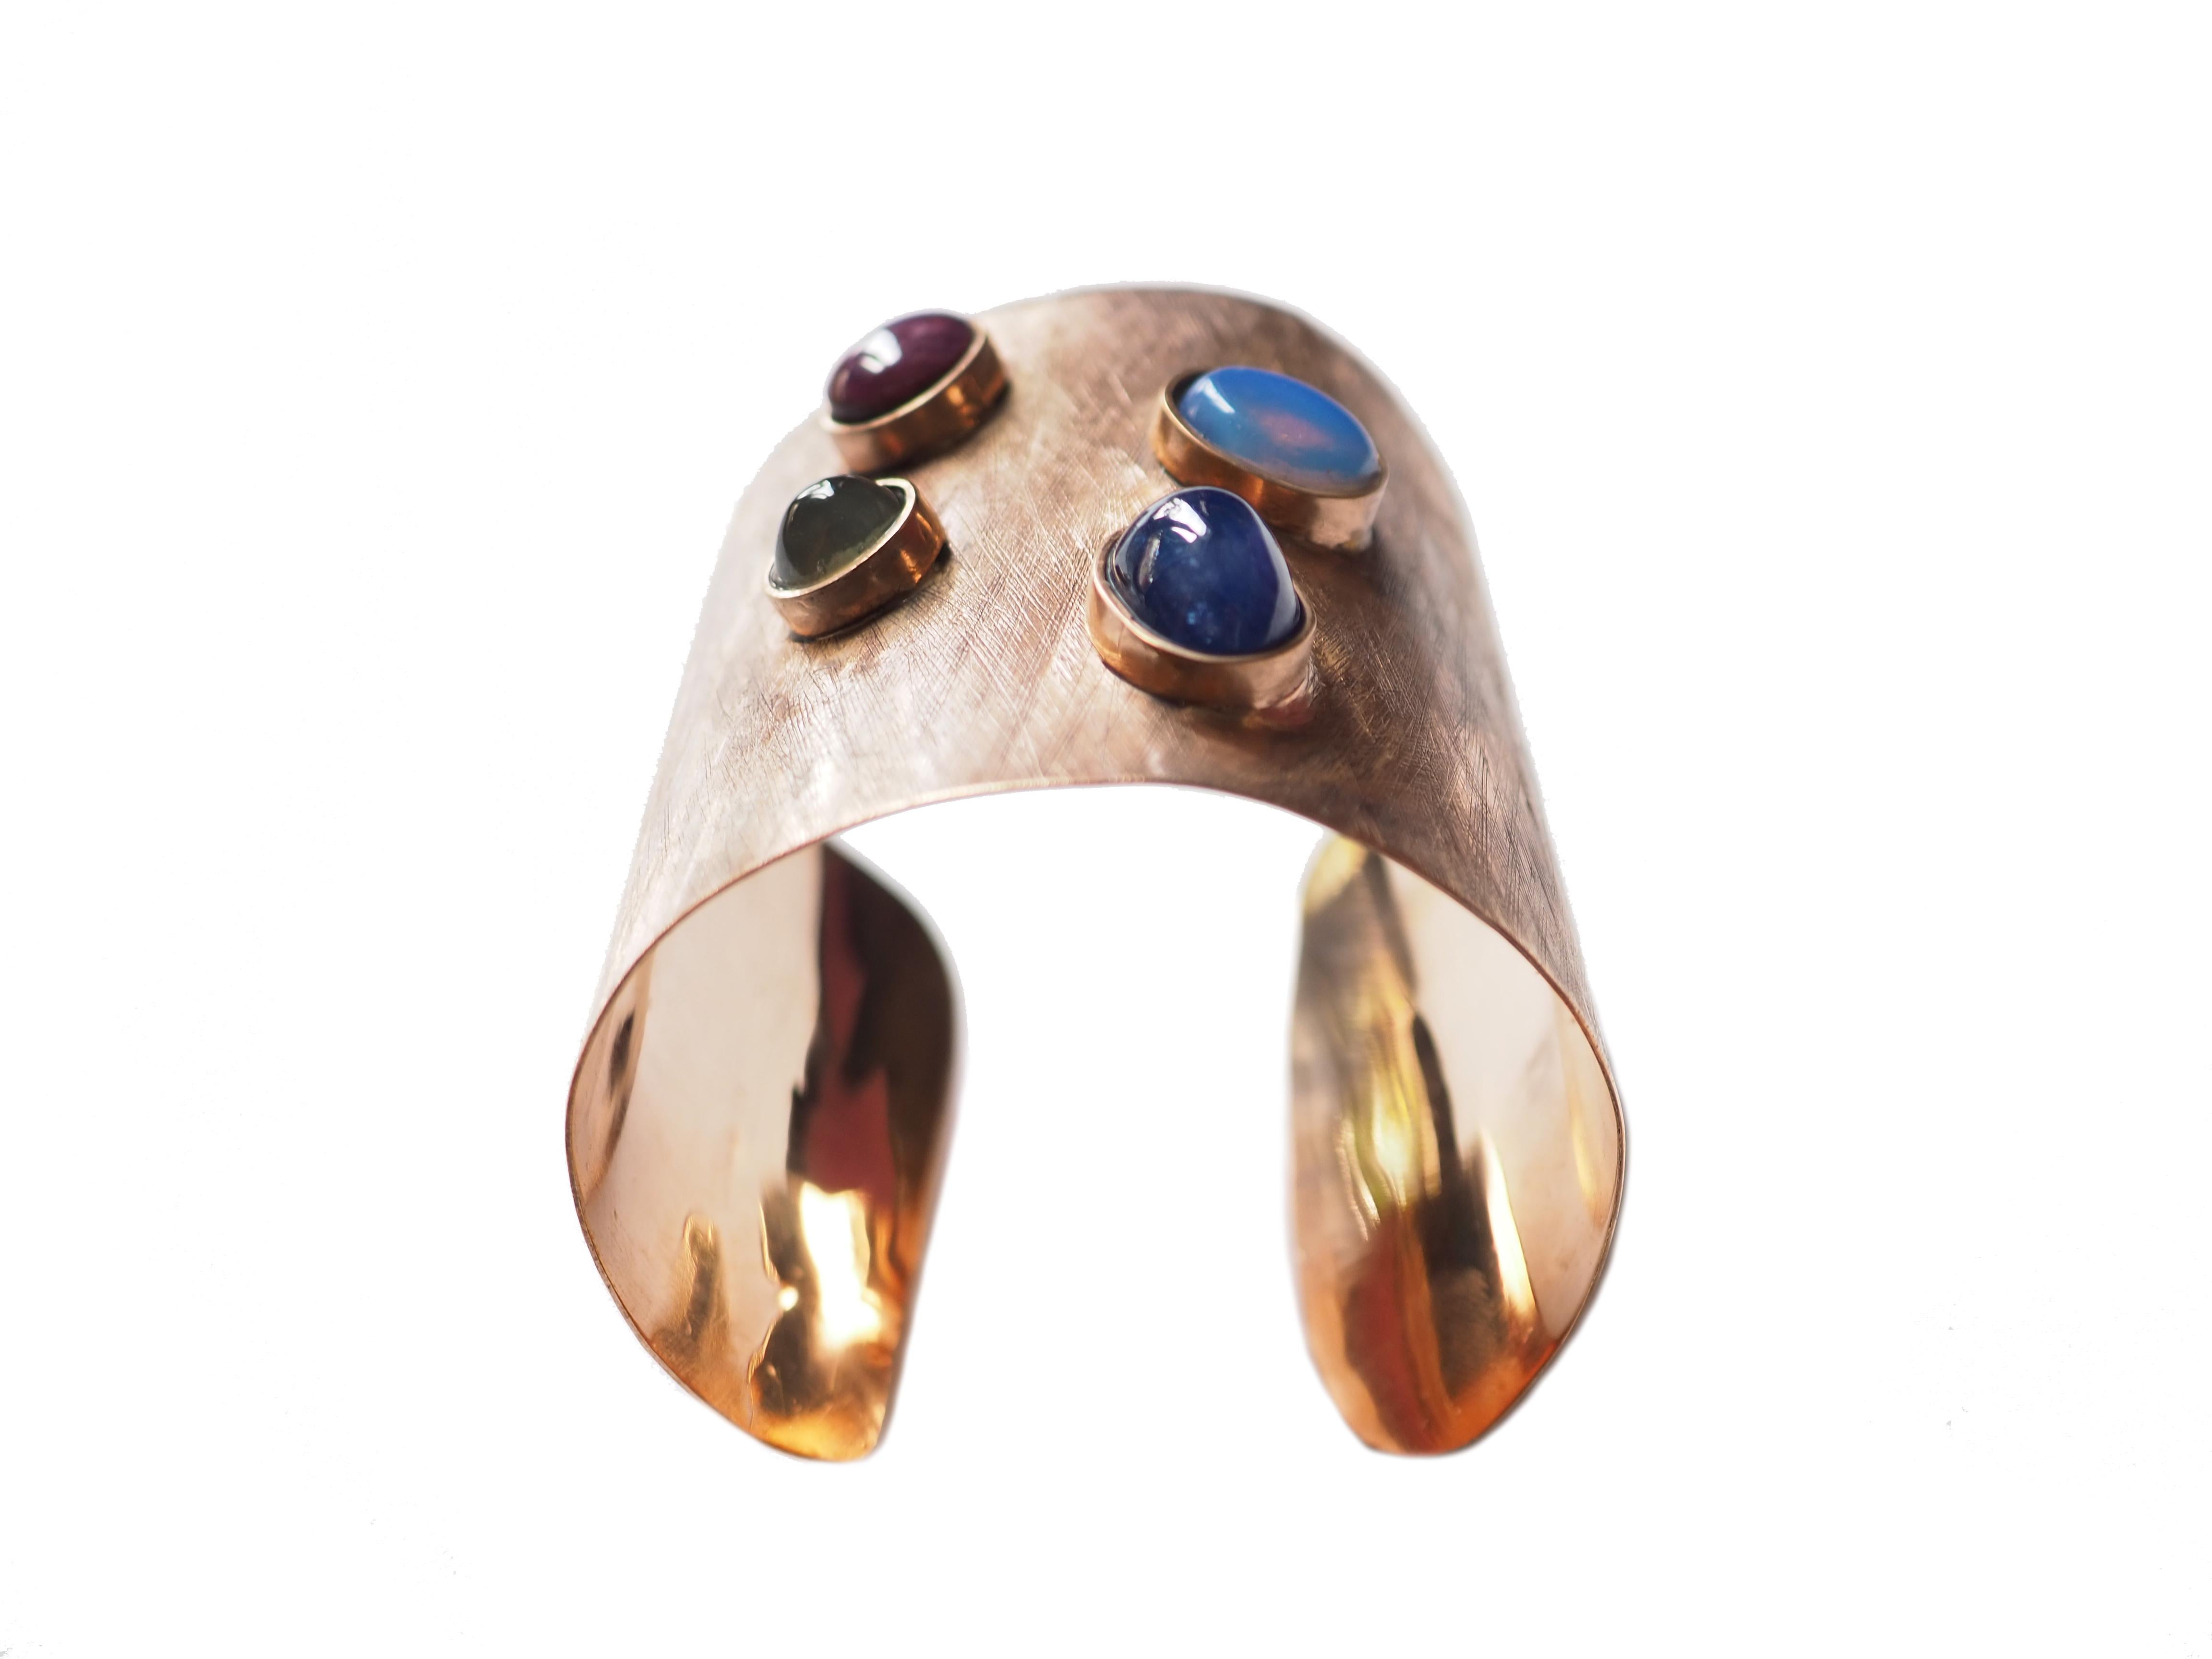 Bracelet en bronze avec  rubis étoilé, opale,  saphir bleu fabriqué à la main.
Tous les bijoux Giulia Colussi Jewelry sont neufs et n'ont jamais été portés ou possédés auparavant. Chaque article arrivera à votre porte joliment emballé dans nos